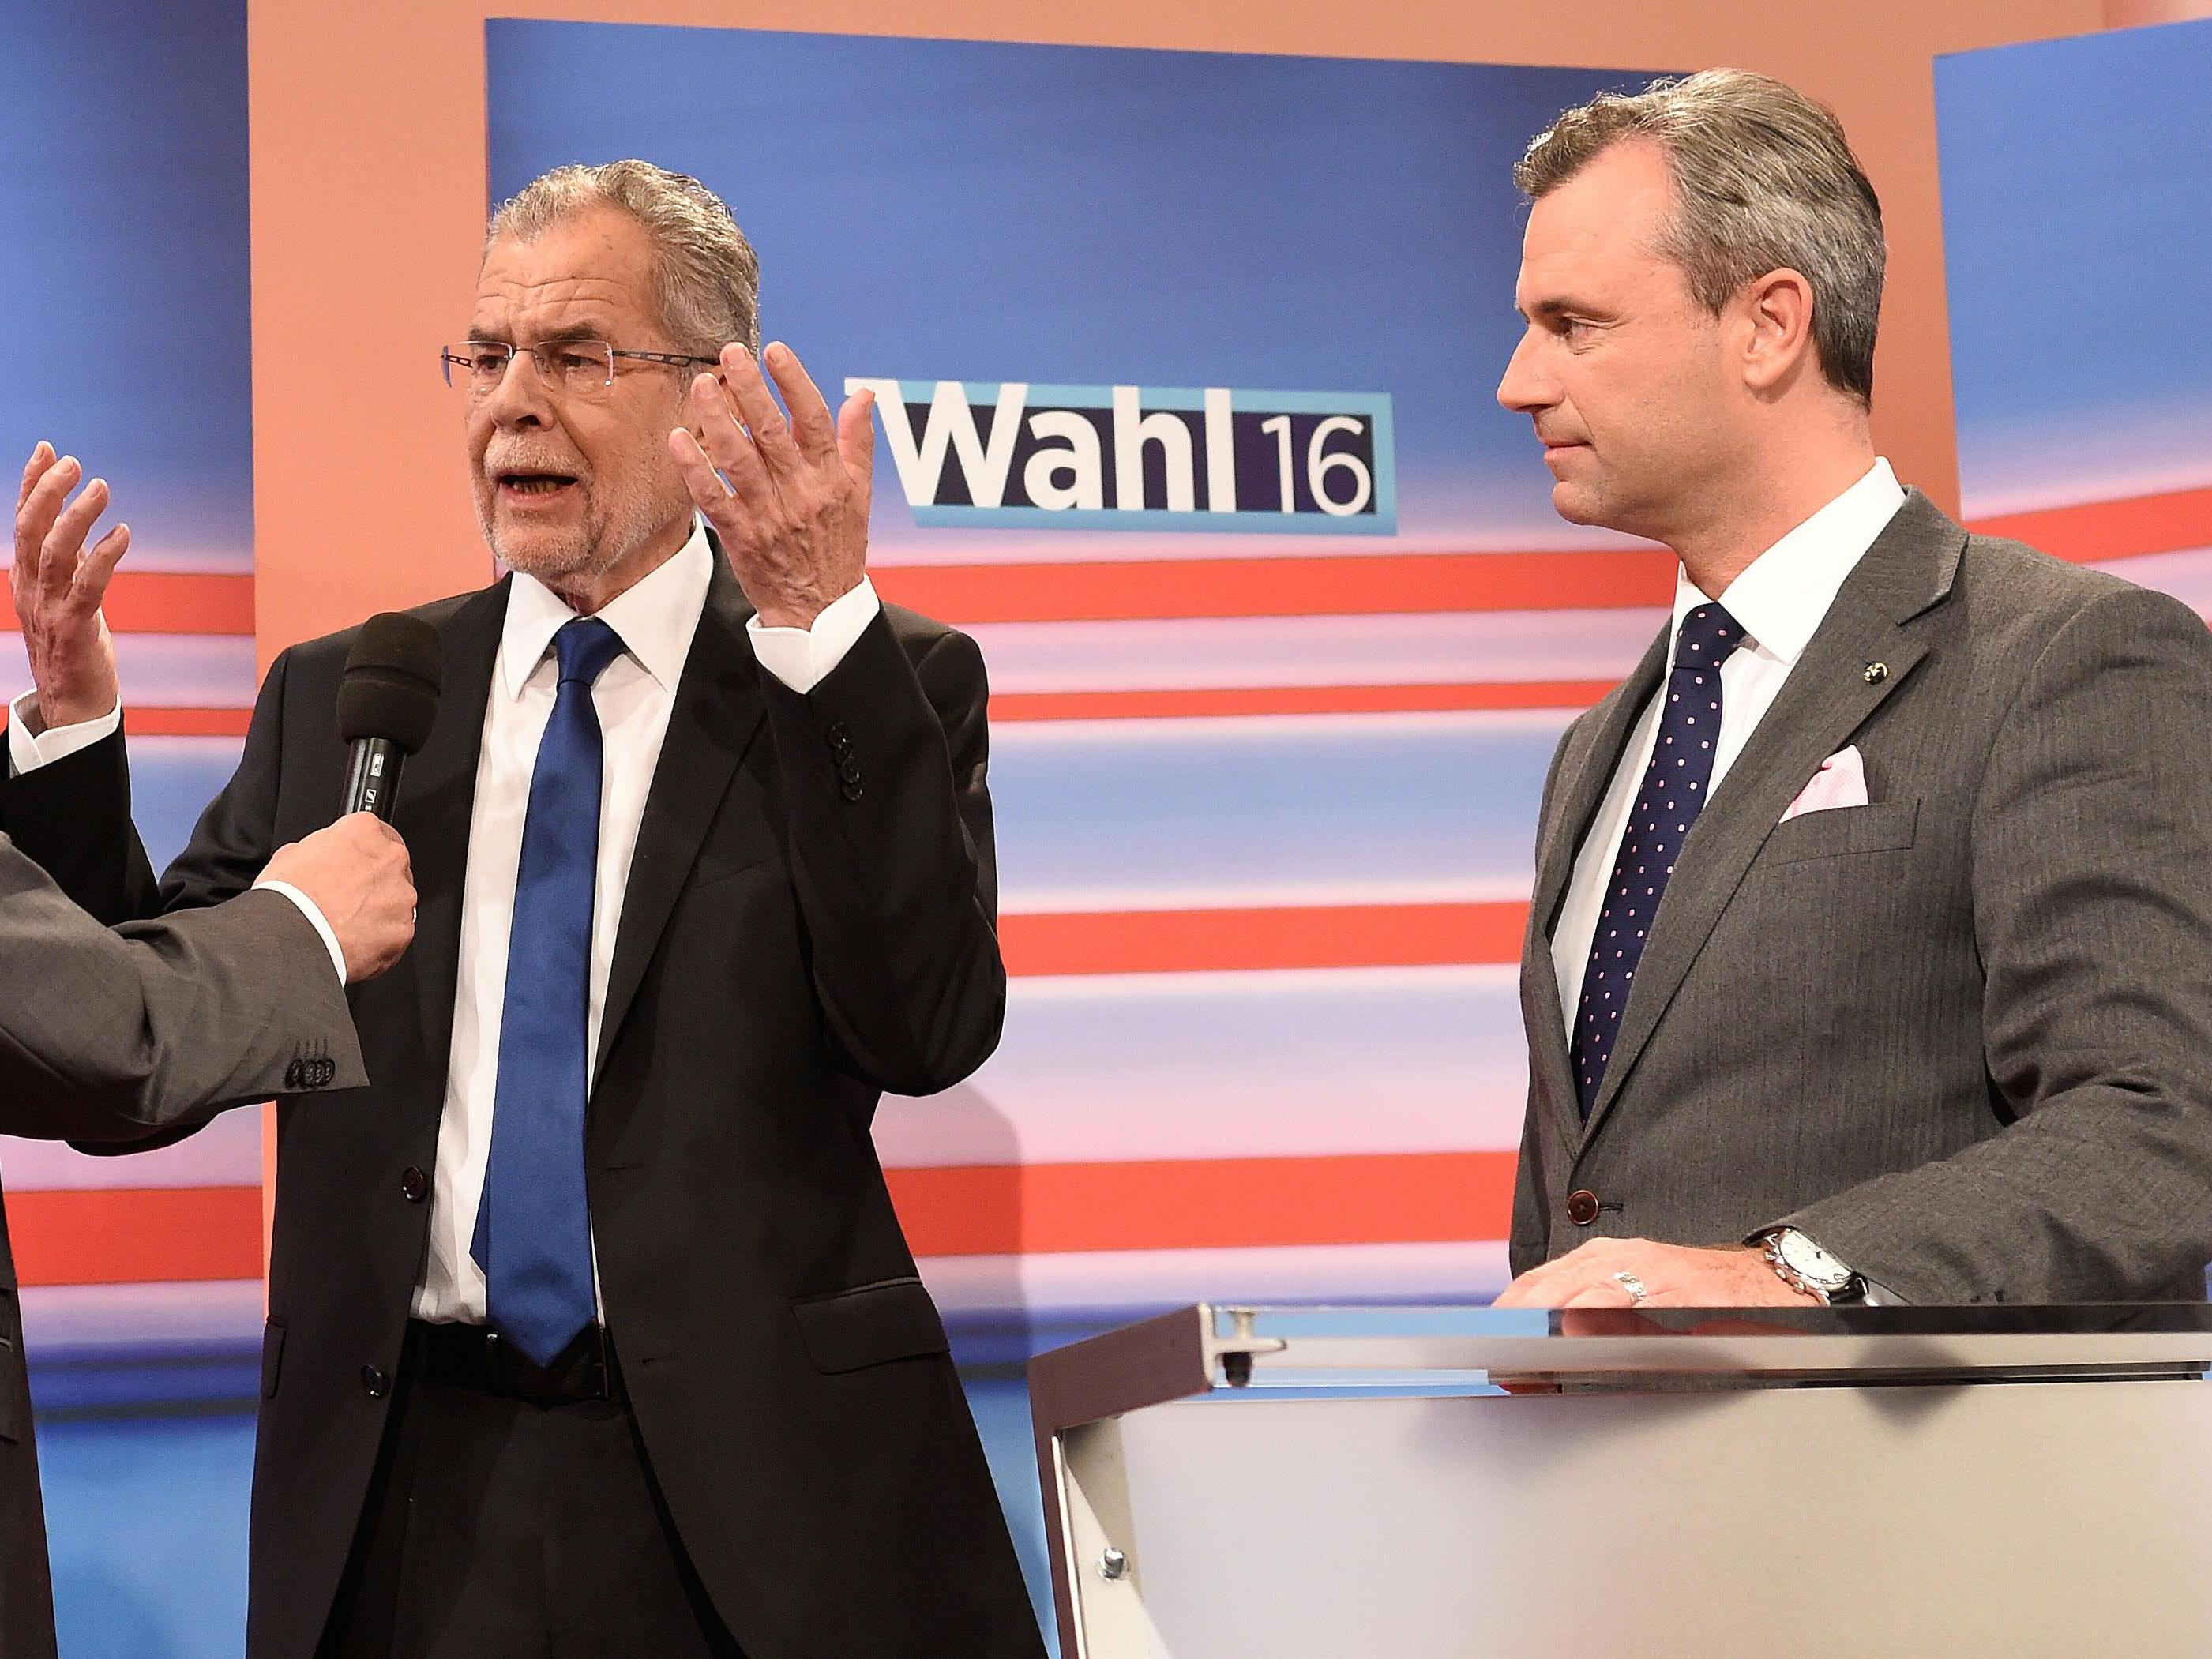 Der Kampf um noch nicht entschlossene Stimmen bei den ÖVP-nahen Wählern wird von beiden Seiten forciert